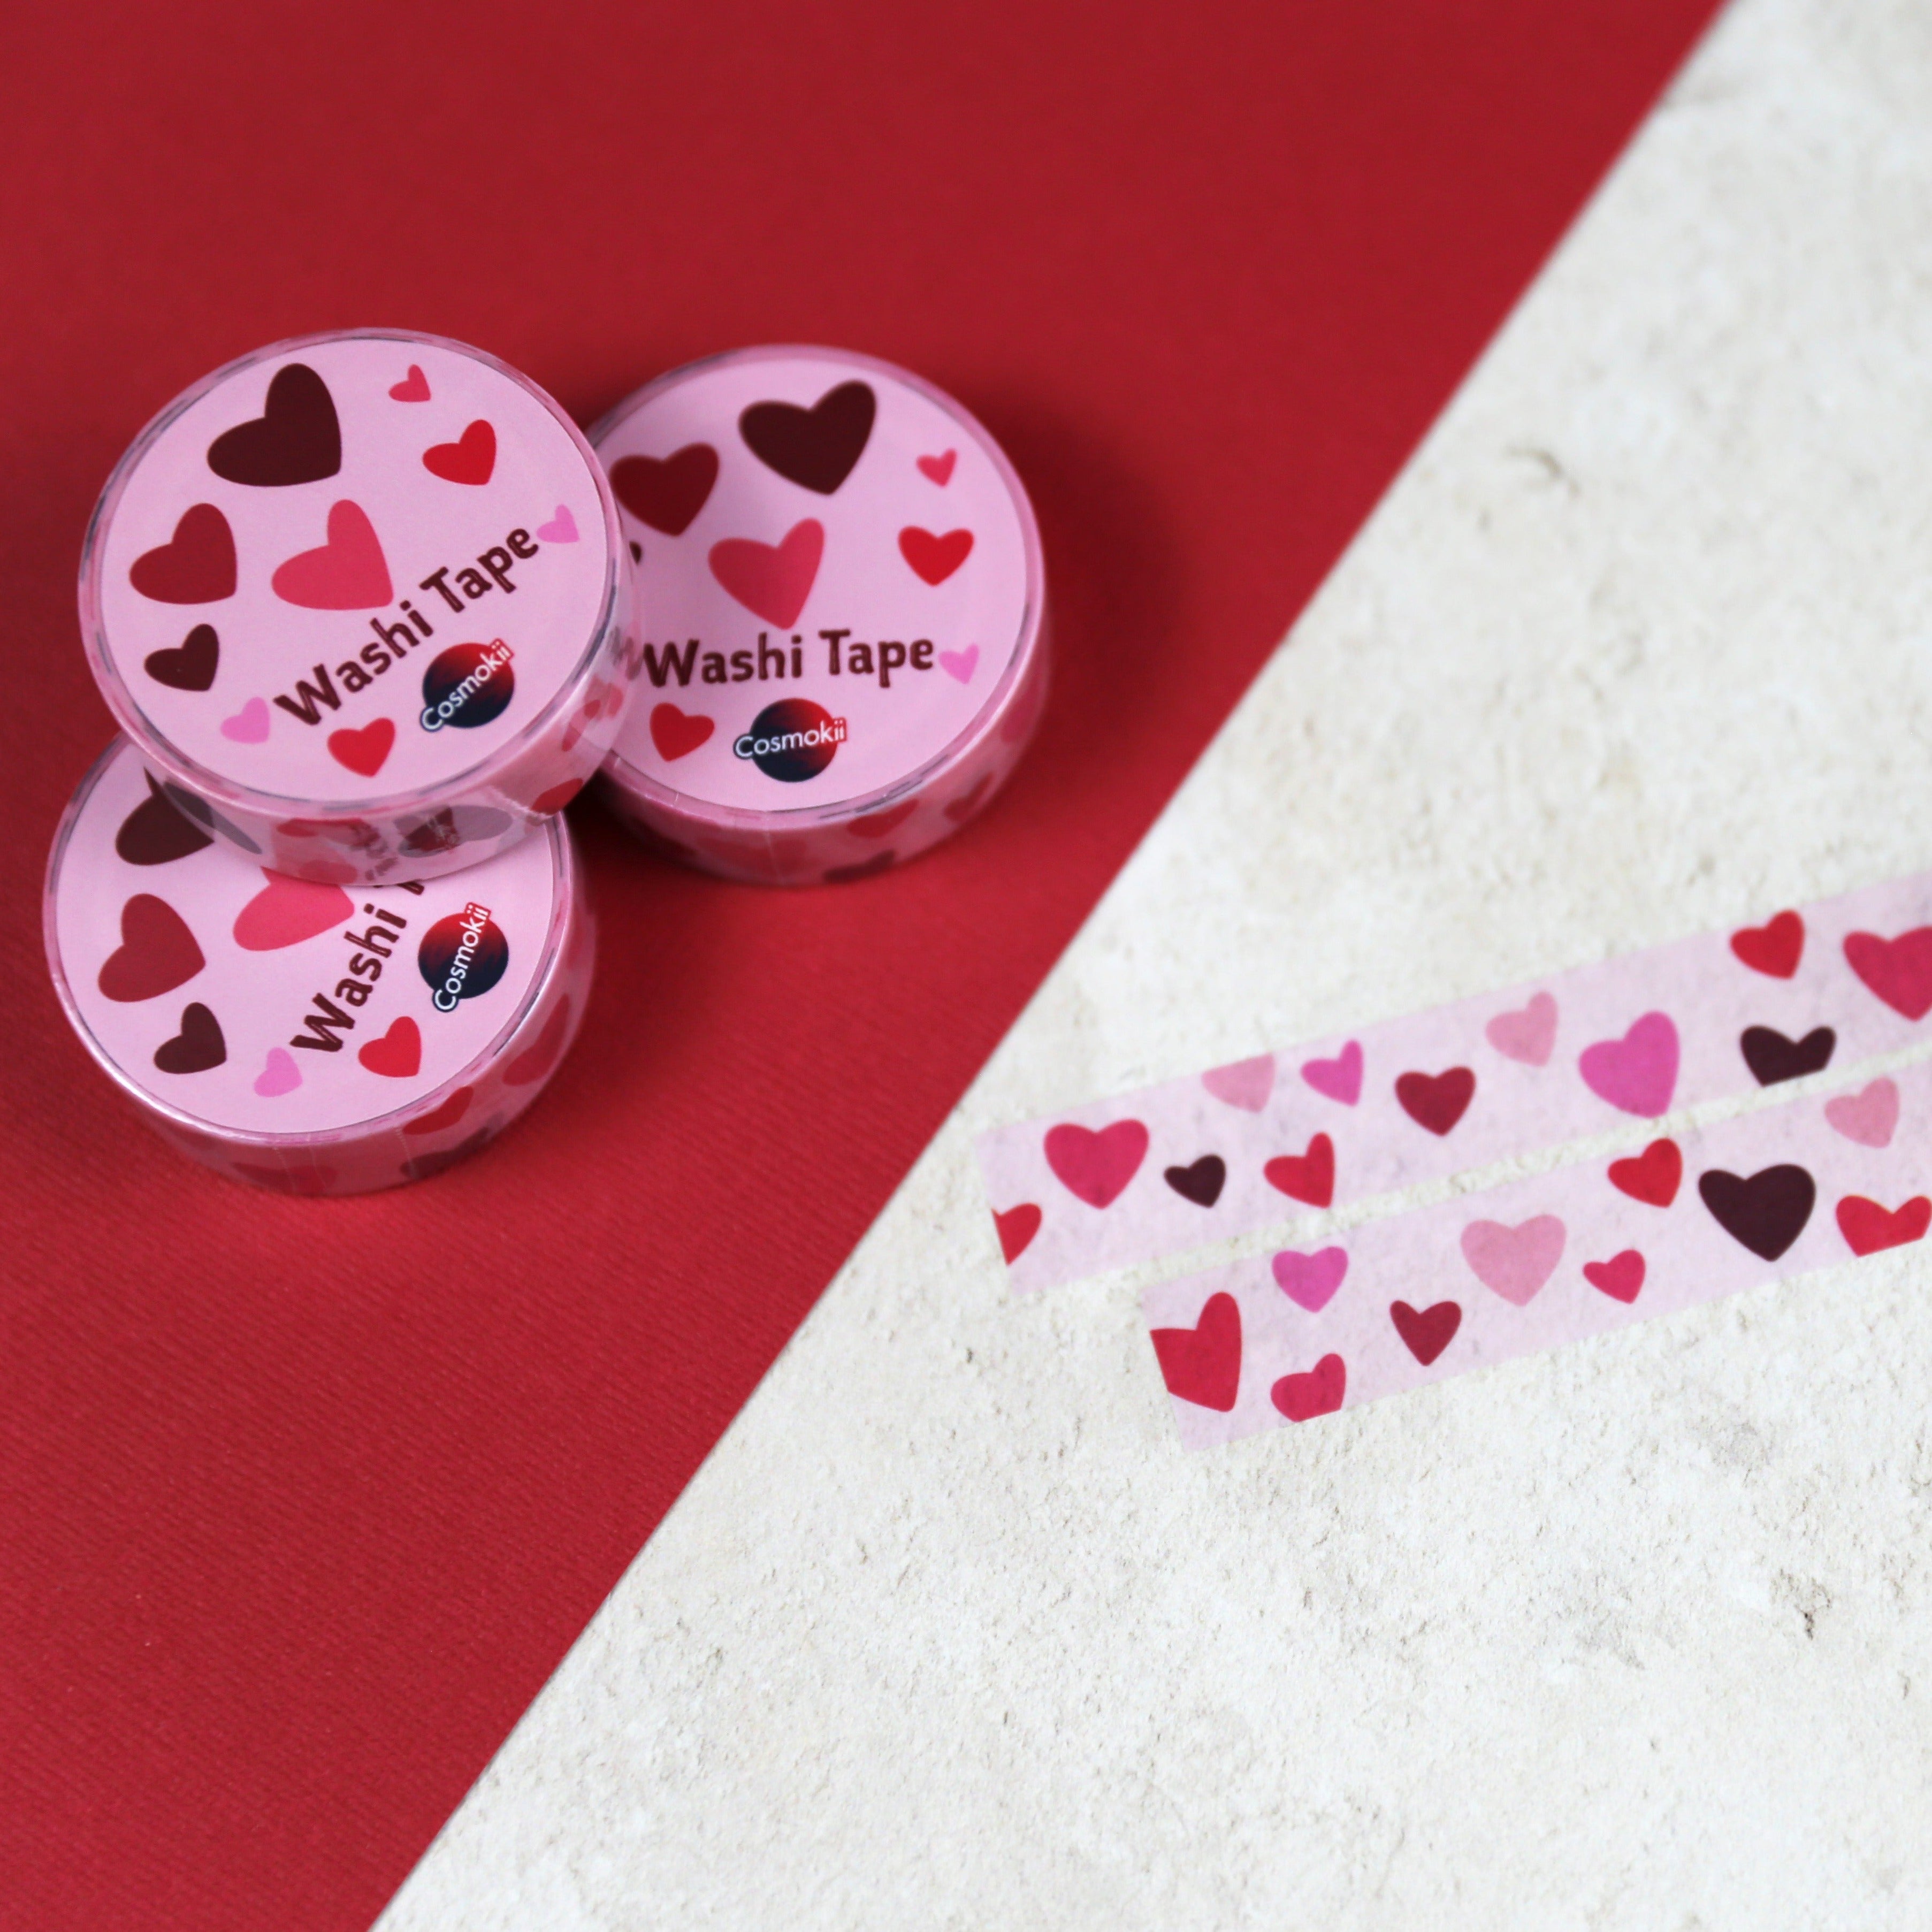 Washi Tape Heart Craft